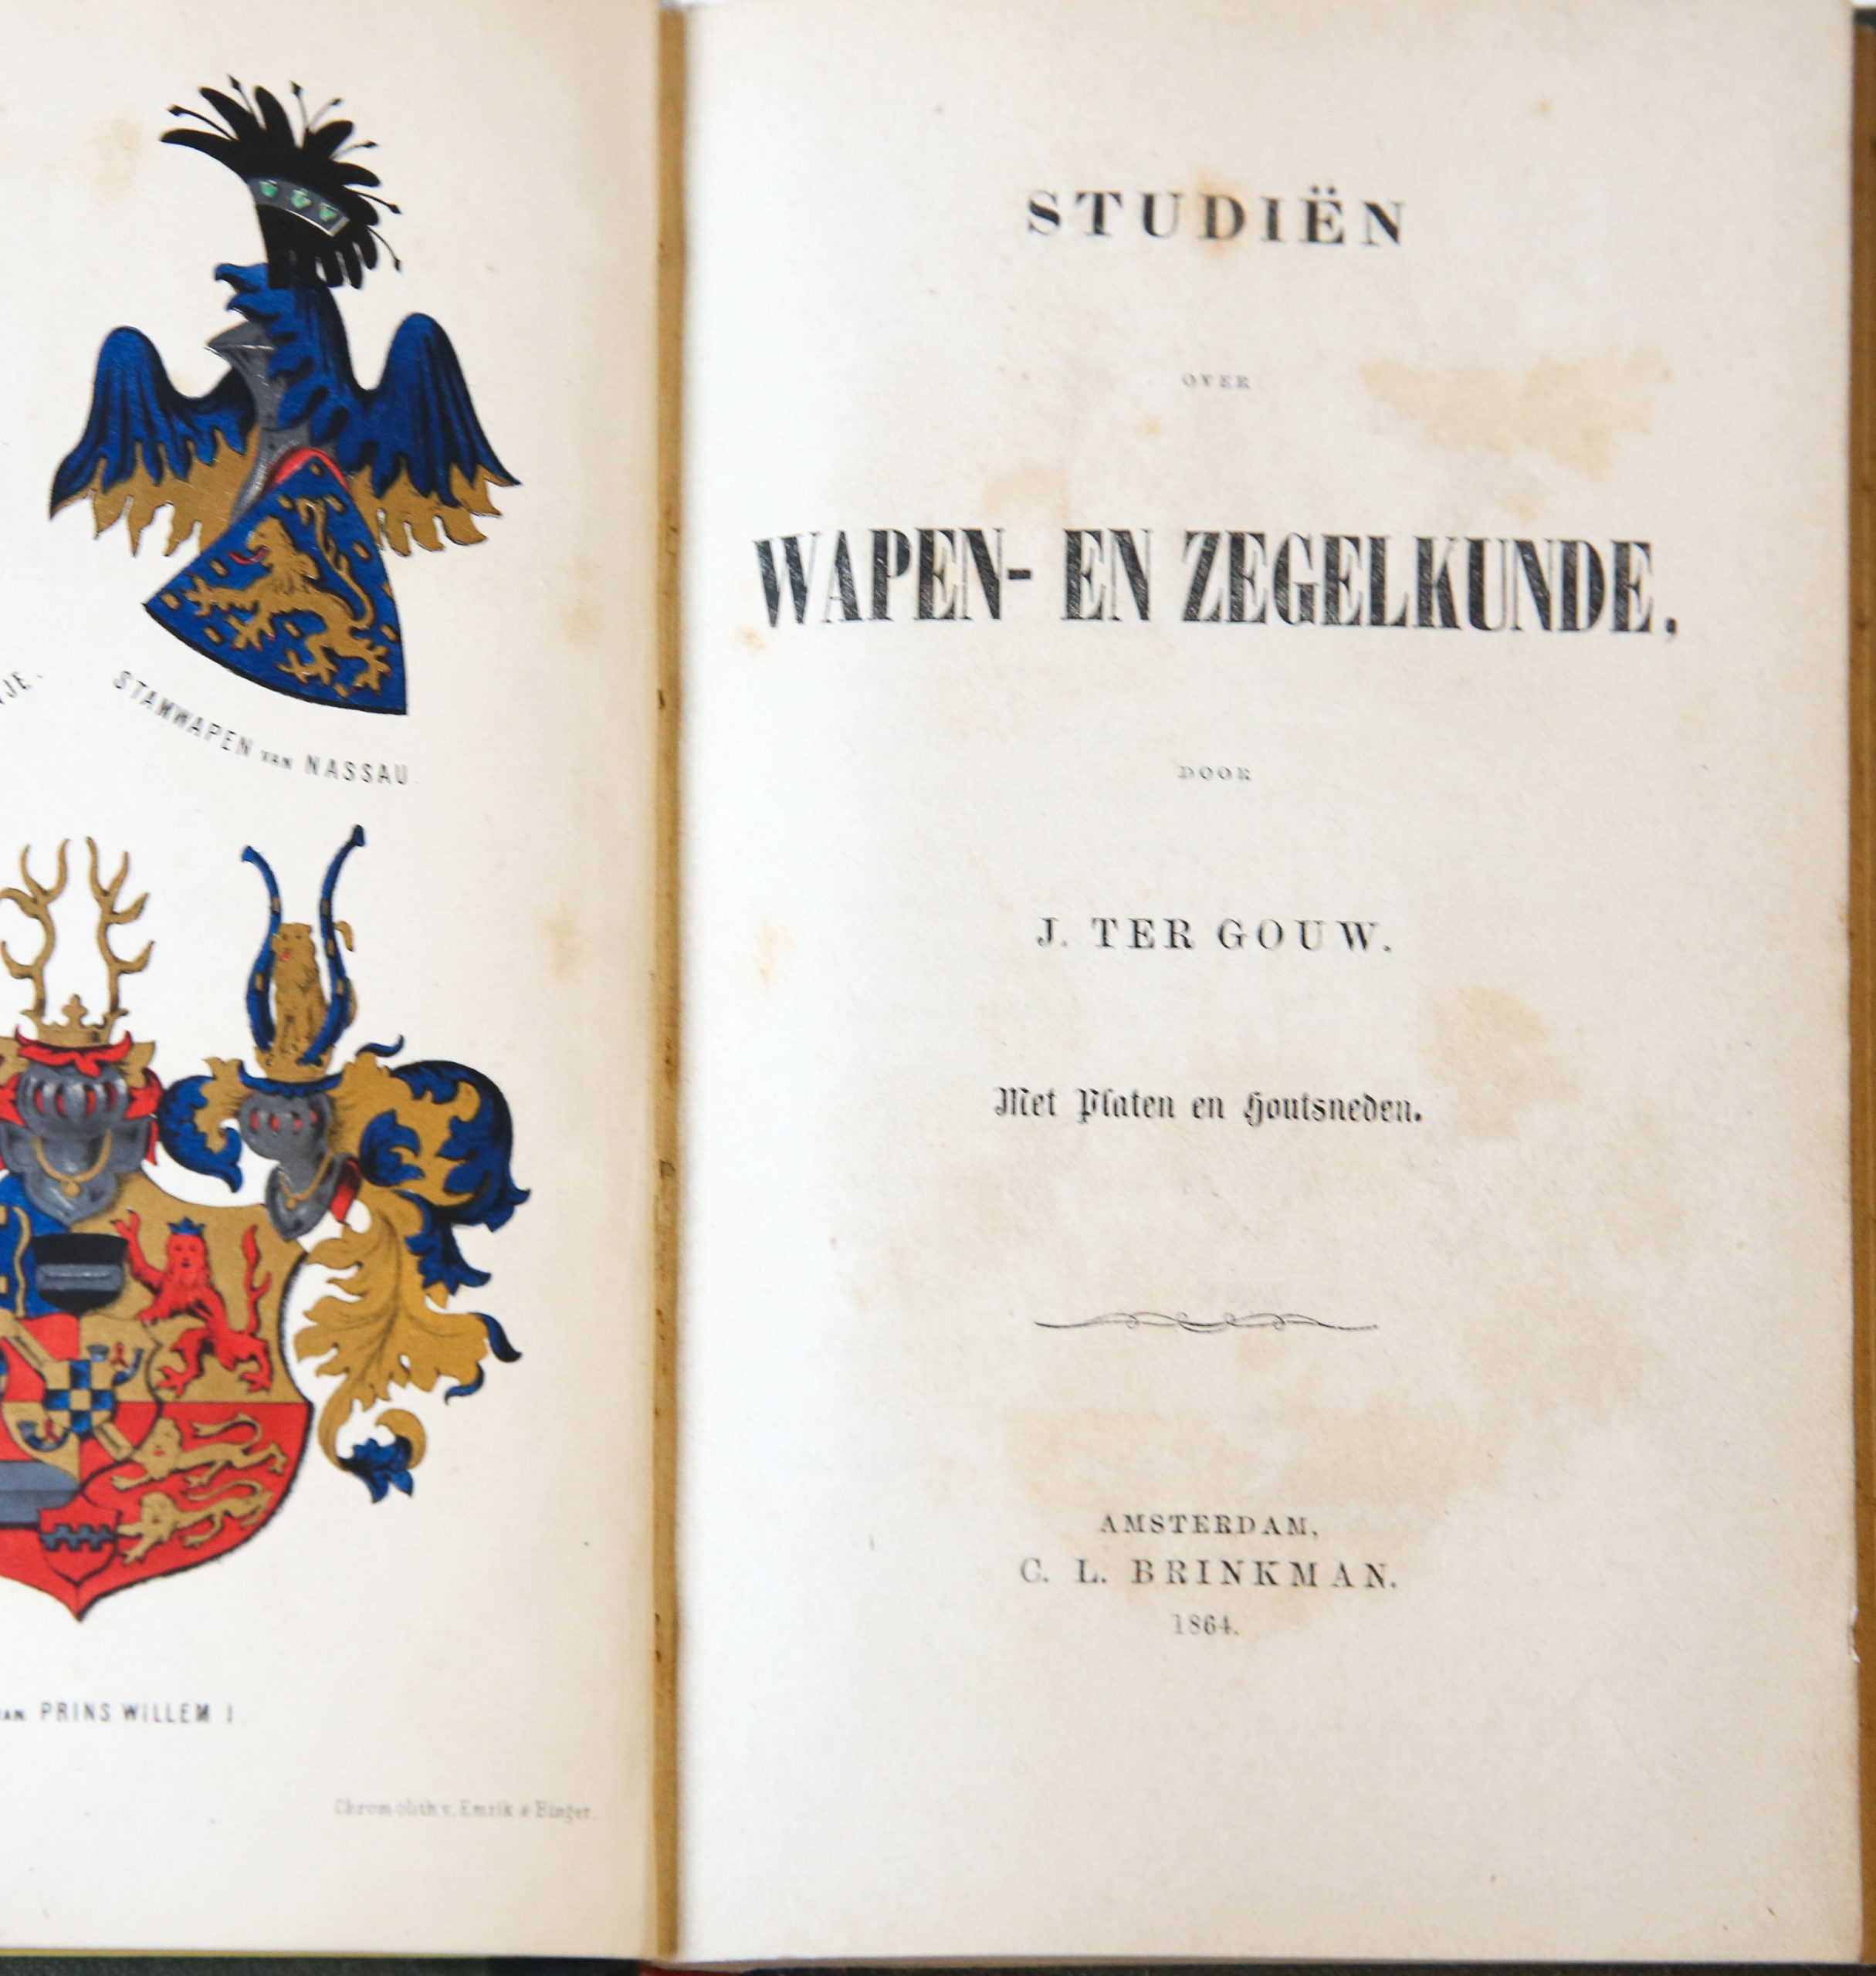 Studiën over wapen- en zegelkunde. Amsterdam 1864. Geïll., 222 p. (onder andere met chromolitho's).